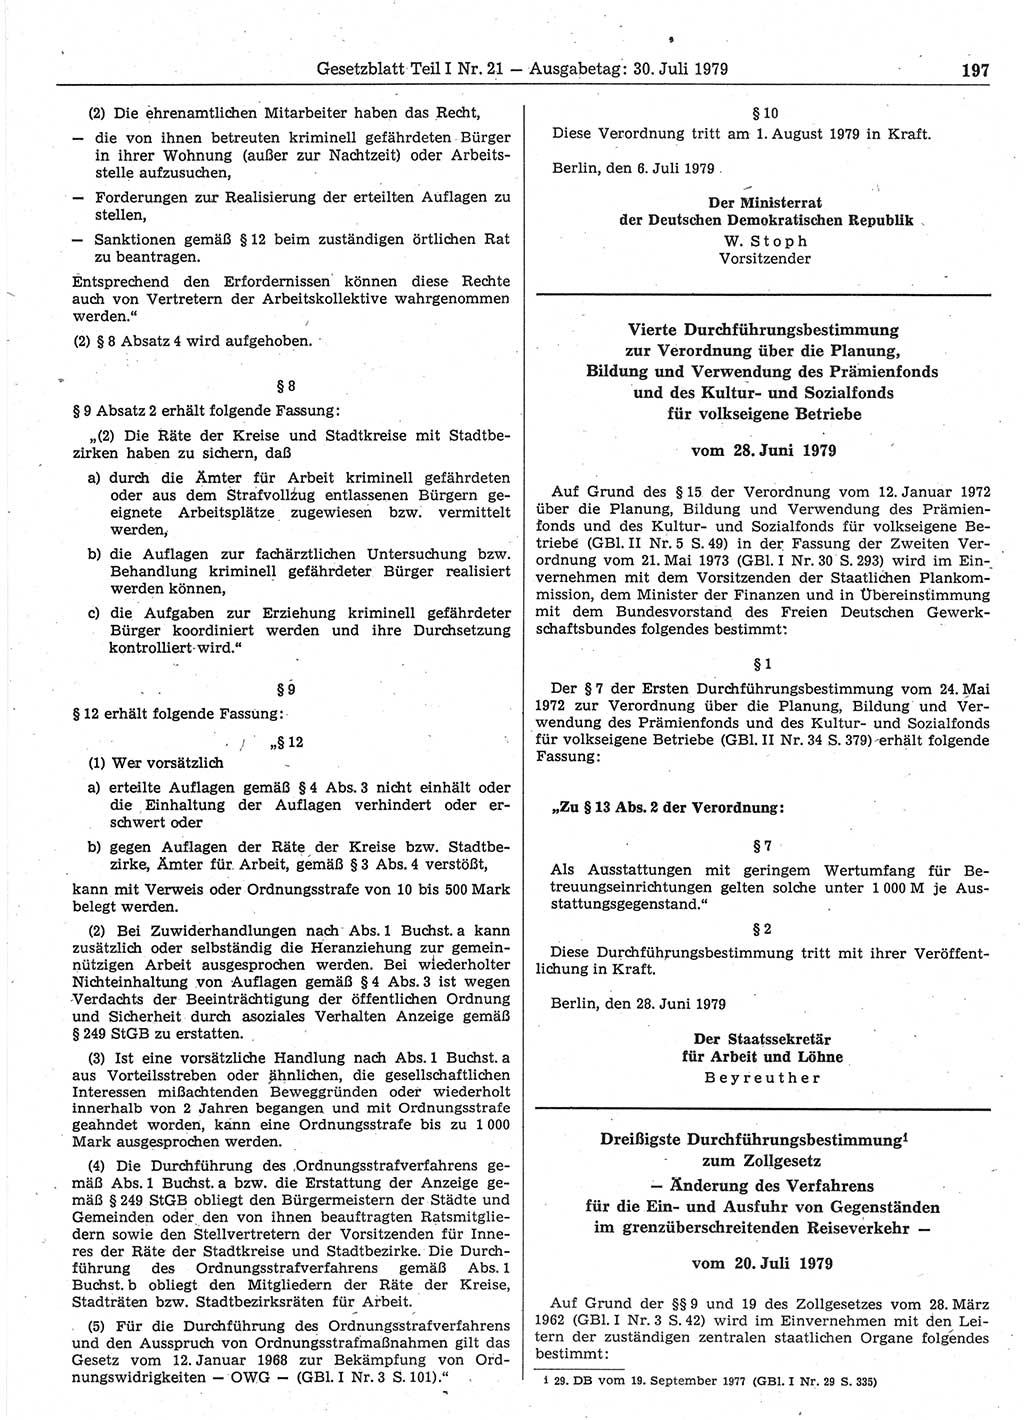 Gesetzblatt (GBl.) der Deutschen Demokratischen Republik (DDR) Teil Ⅰ 1979, Seite 197 (GBl. DDR Ⅰ 1979, S. 197)